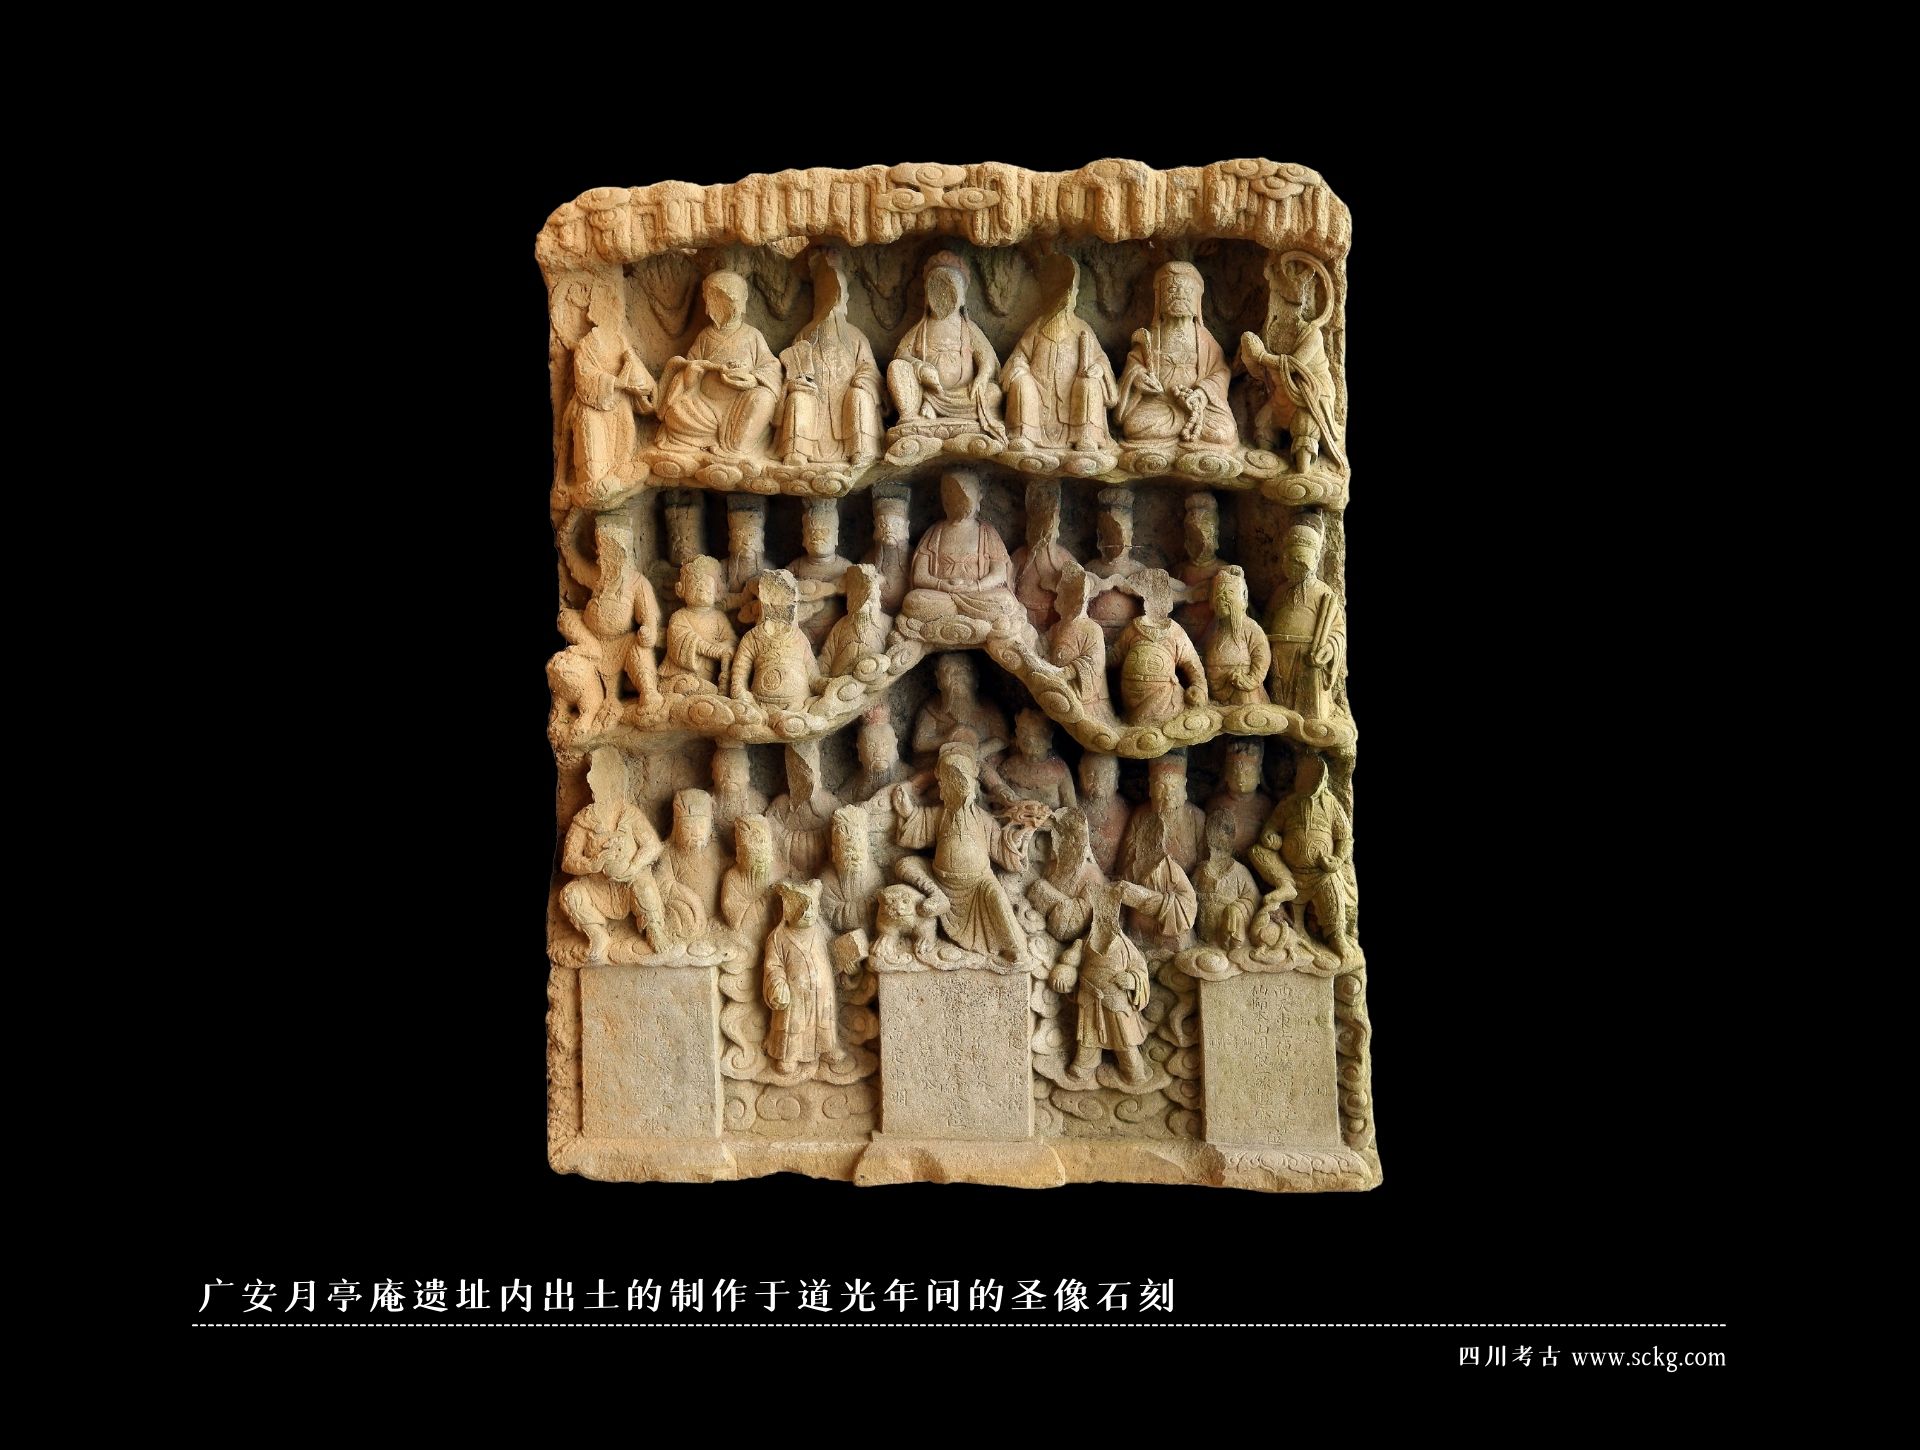 广安月亭庵遗址内出土的制作于道光年间的圣像石刻.jpg